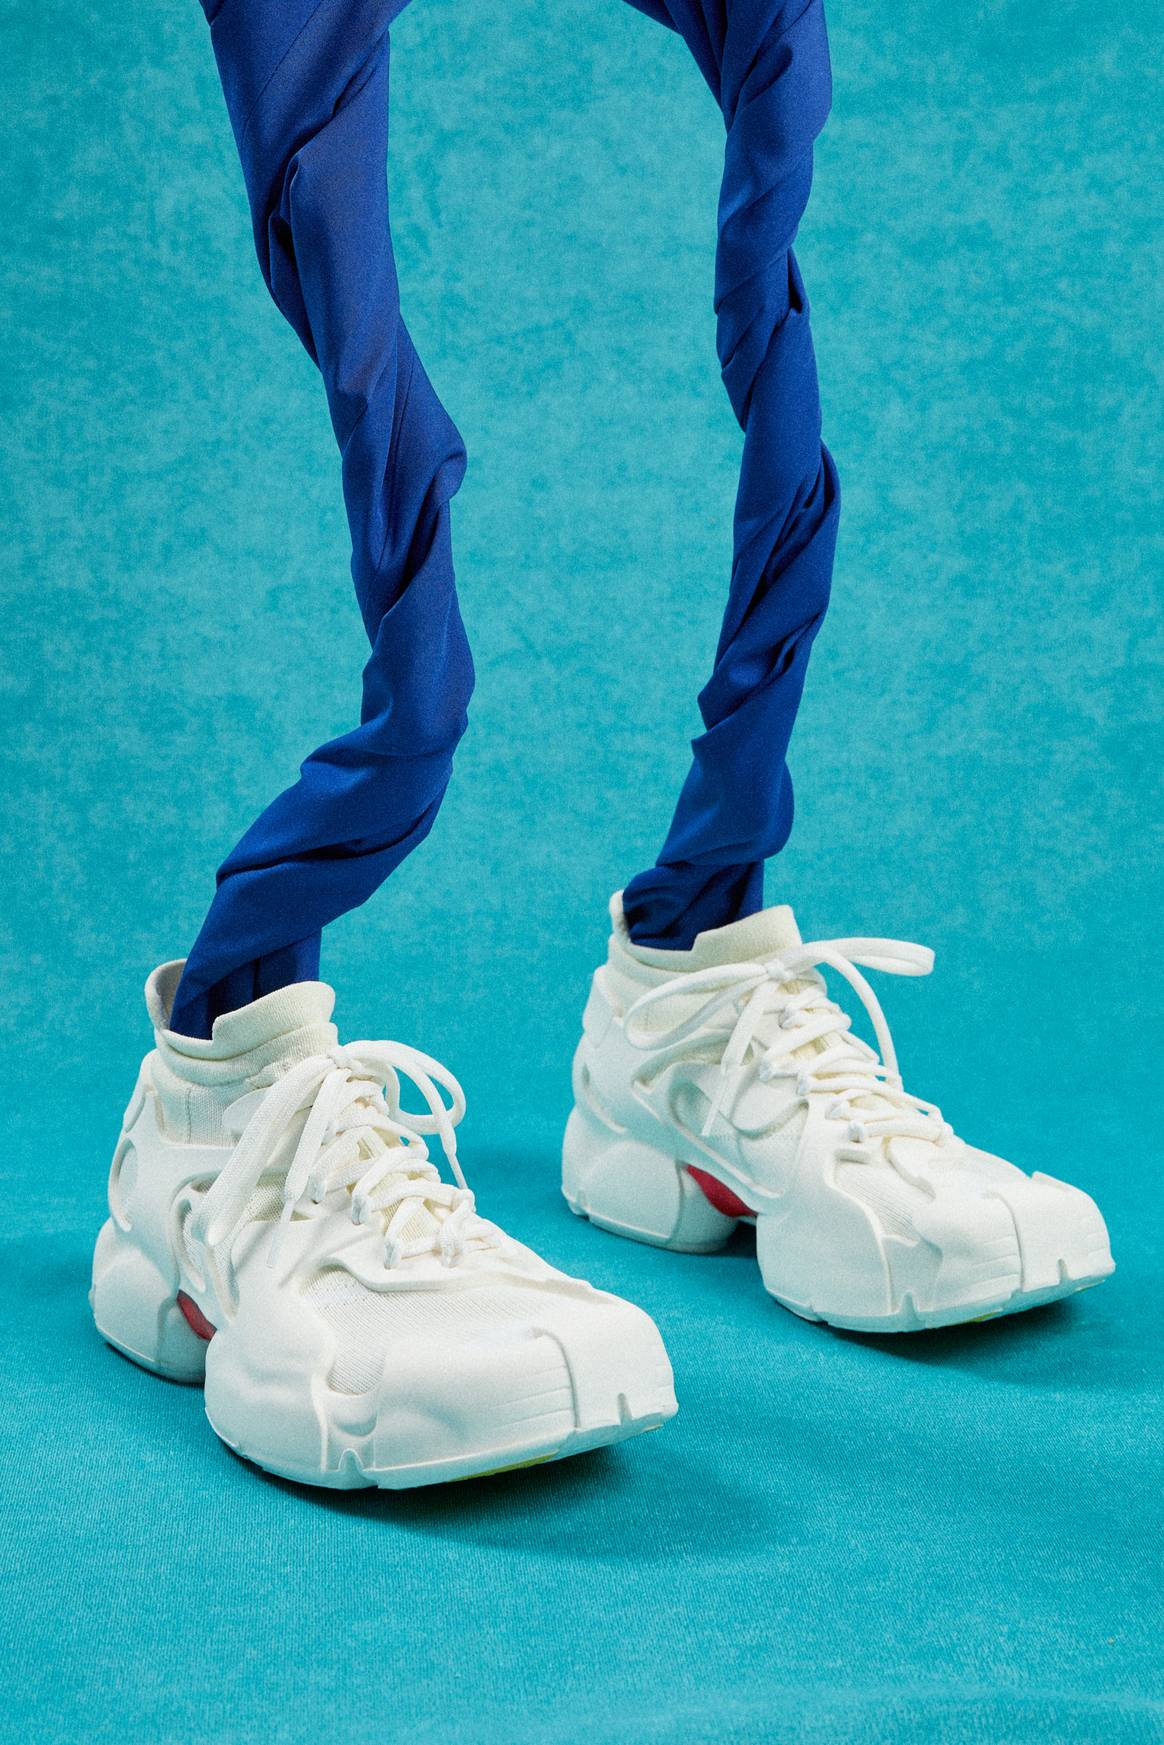 Modelo de zapato de la colección CamperLab. Imagen: Camper